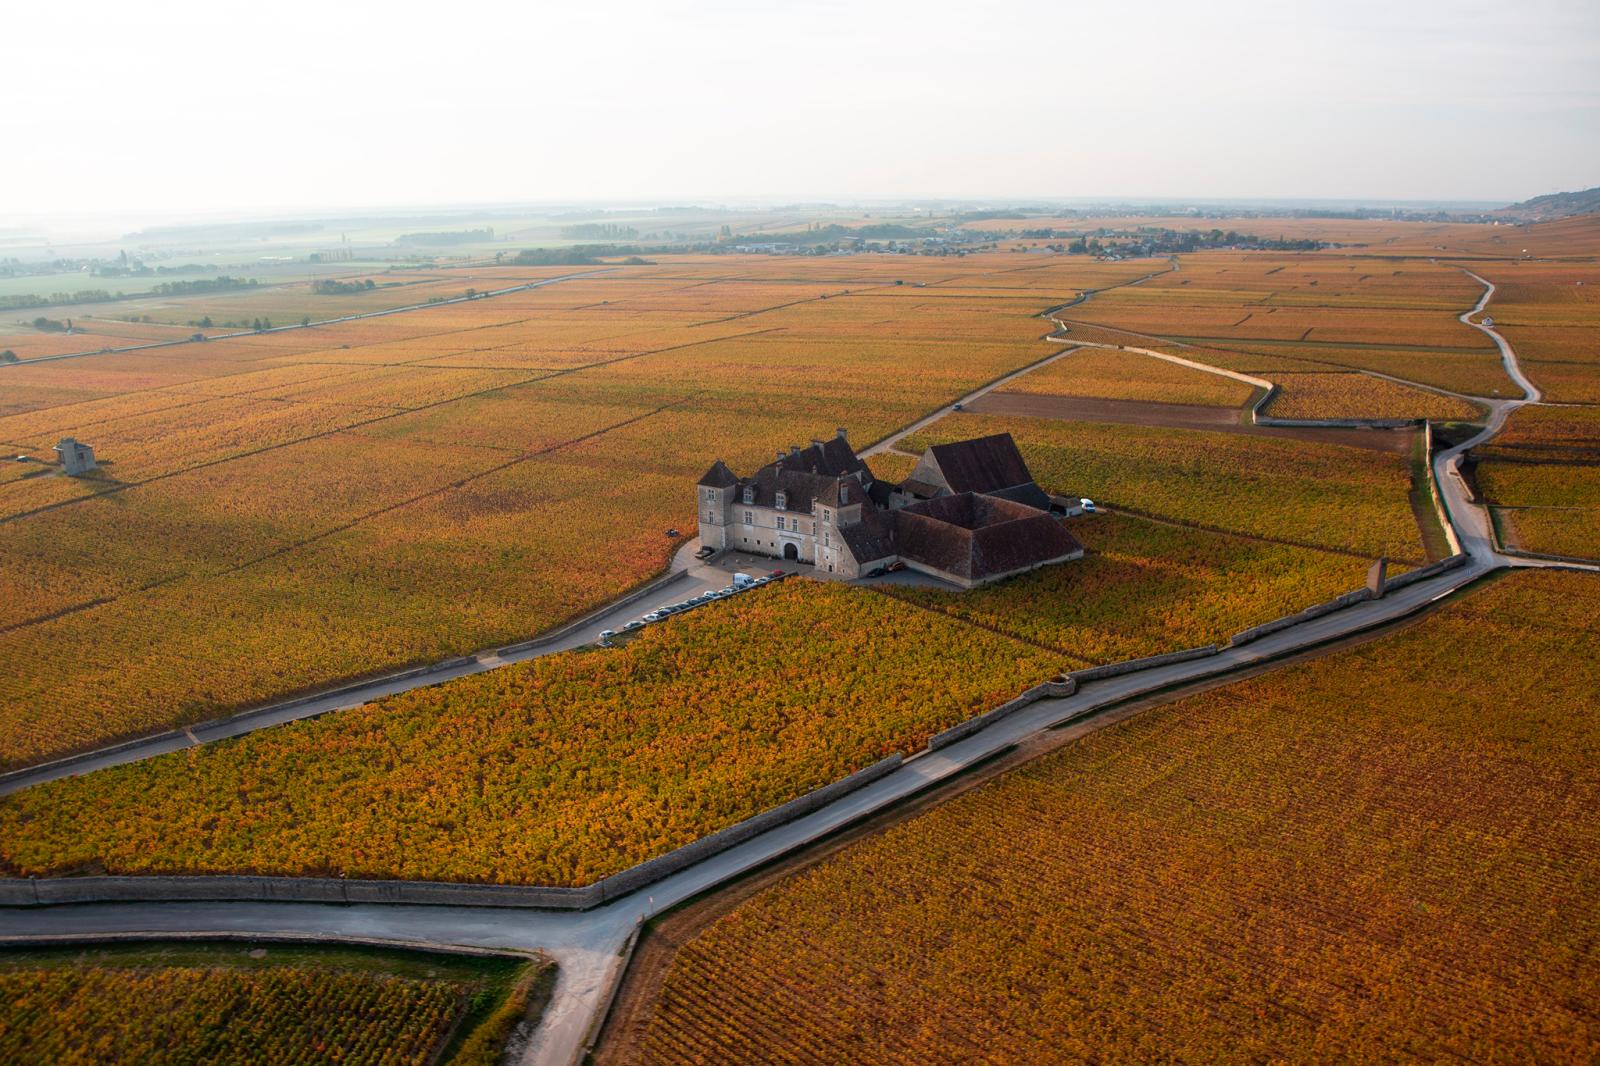 Le Clos de Vougeot: A Château Among Burgundy's Vineyards